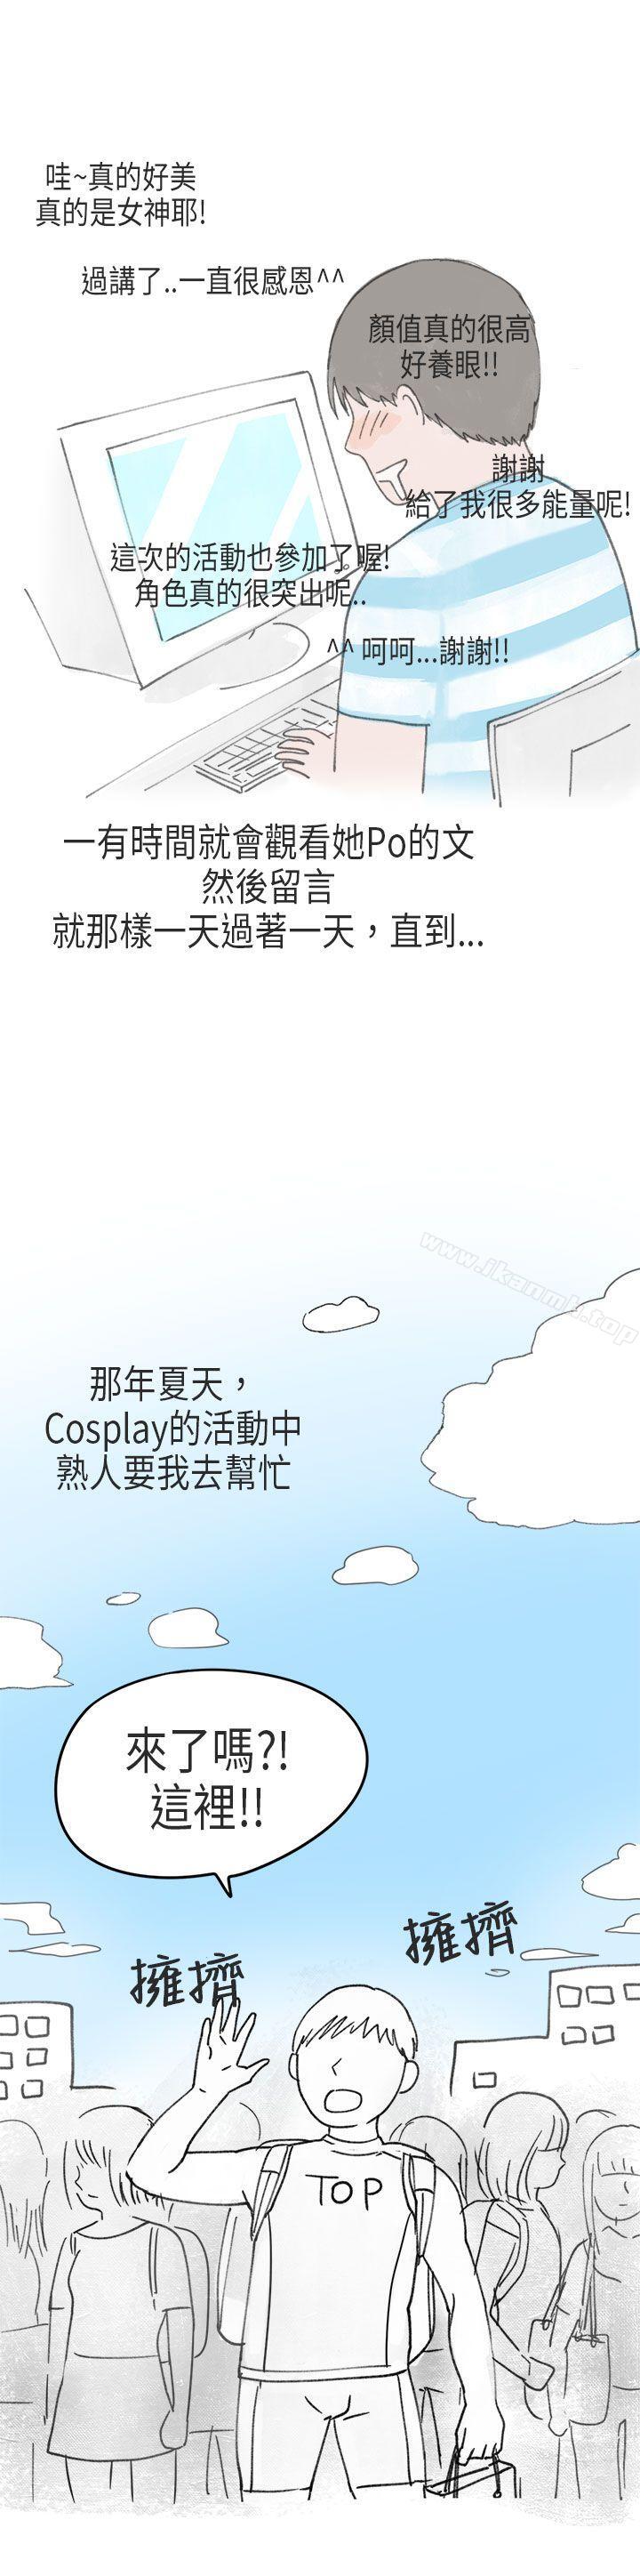 漫画韩国 秘密Story第二季   - 立即阅读 第二季 在Cosplay同好會中(上)第36漫画图片